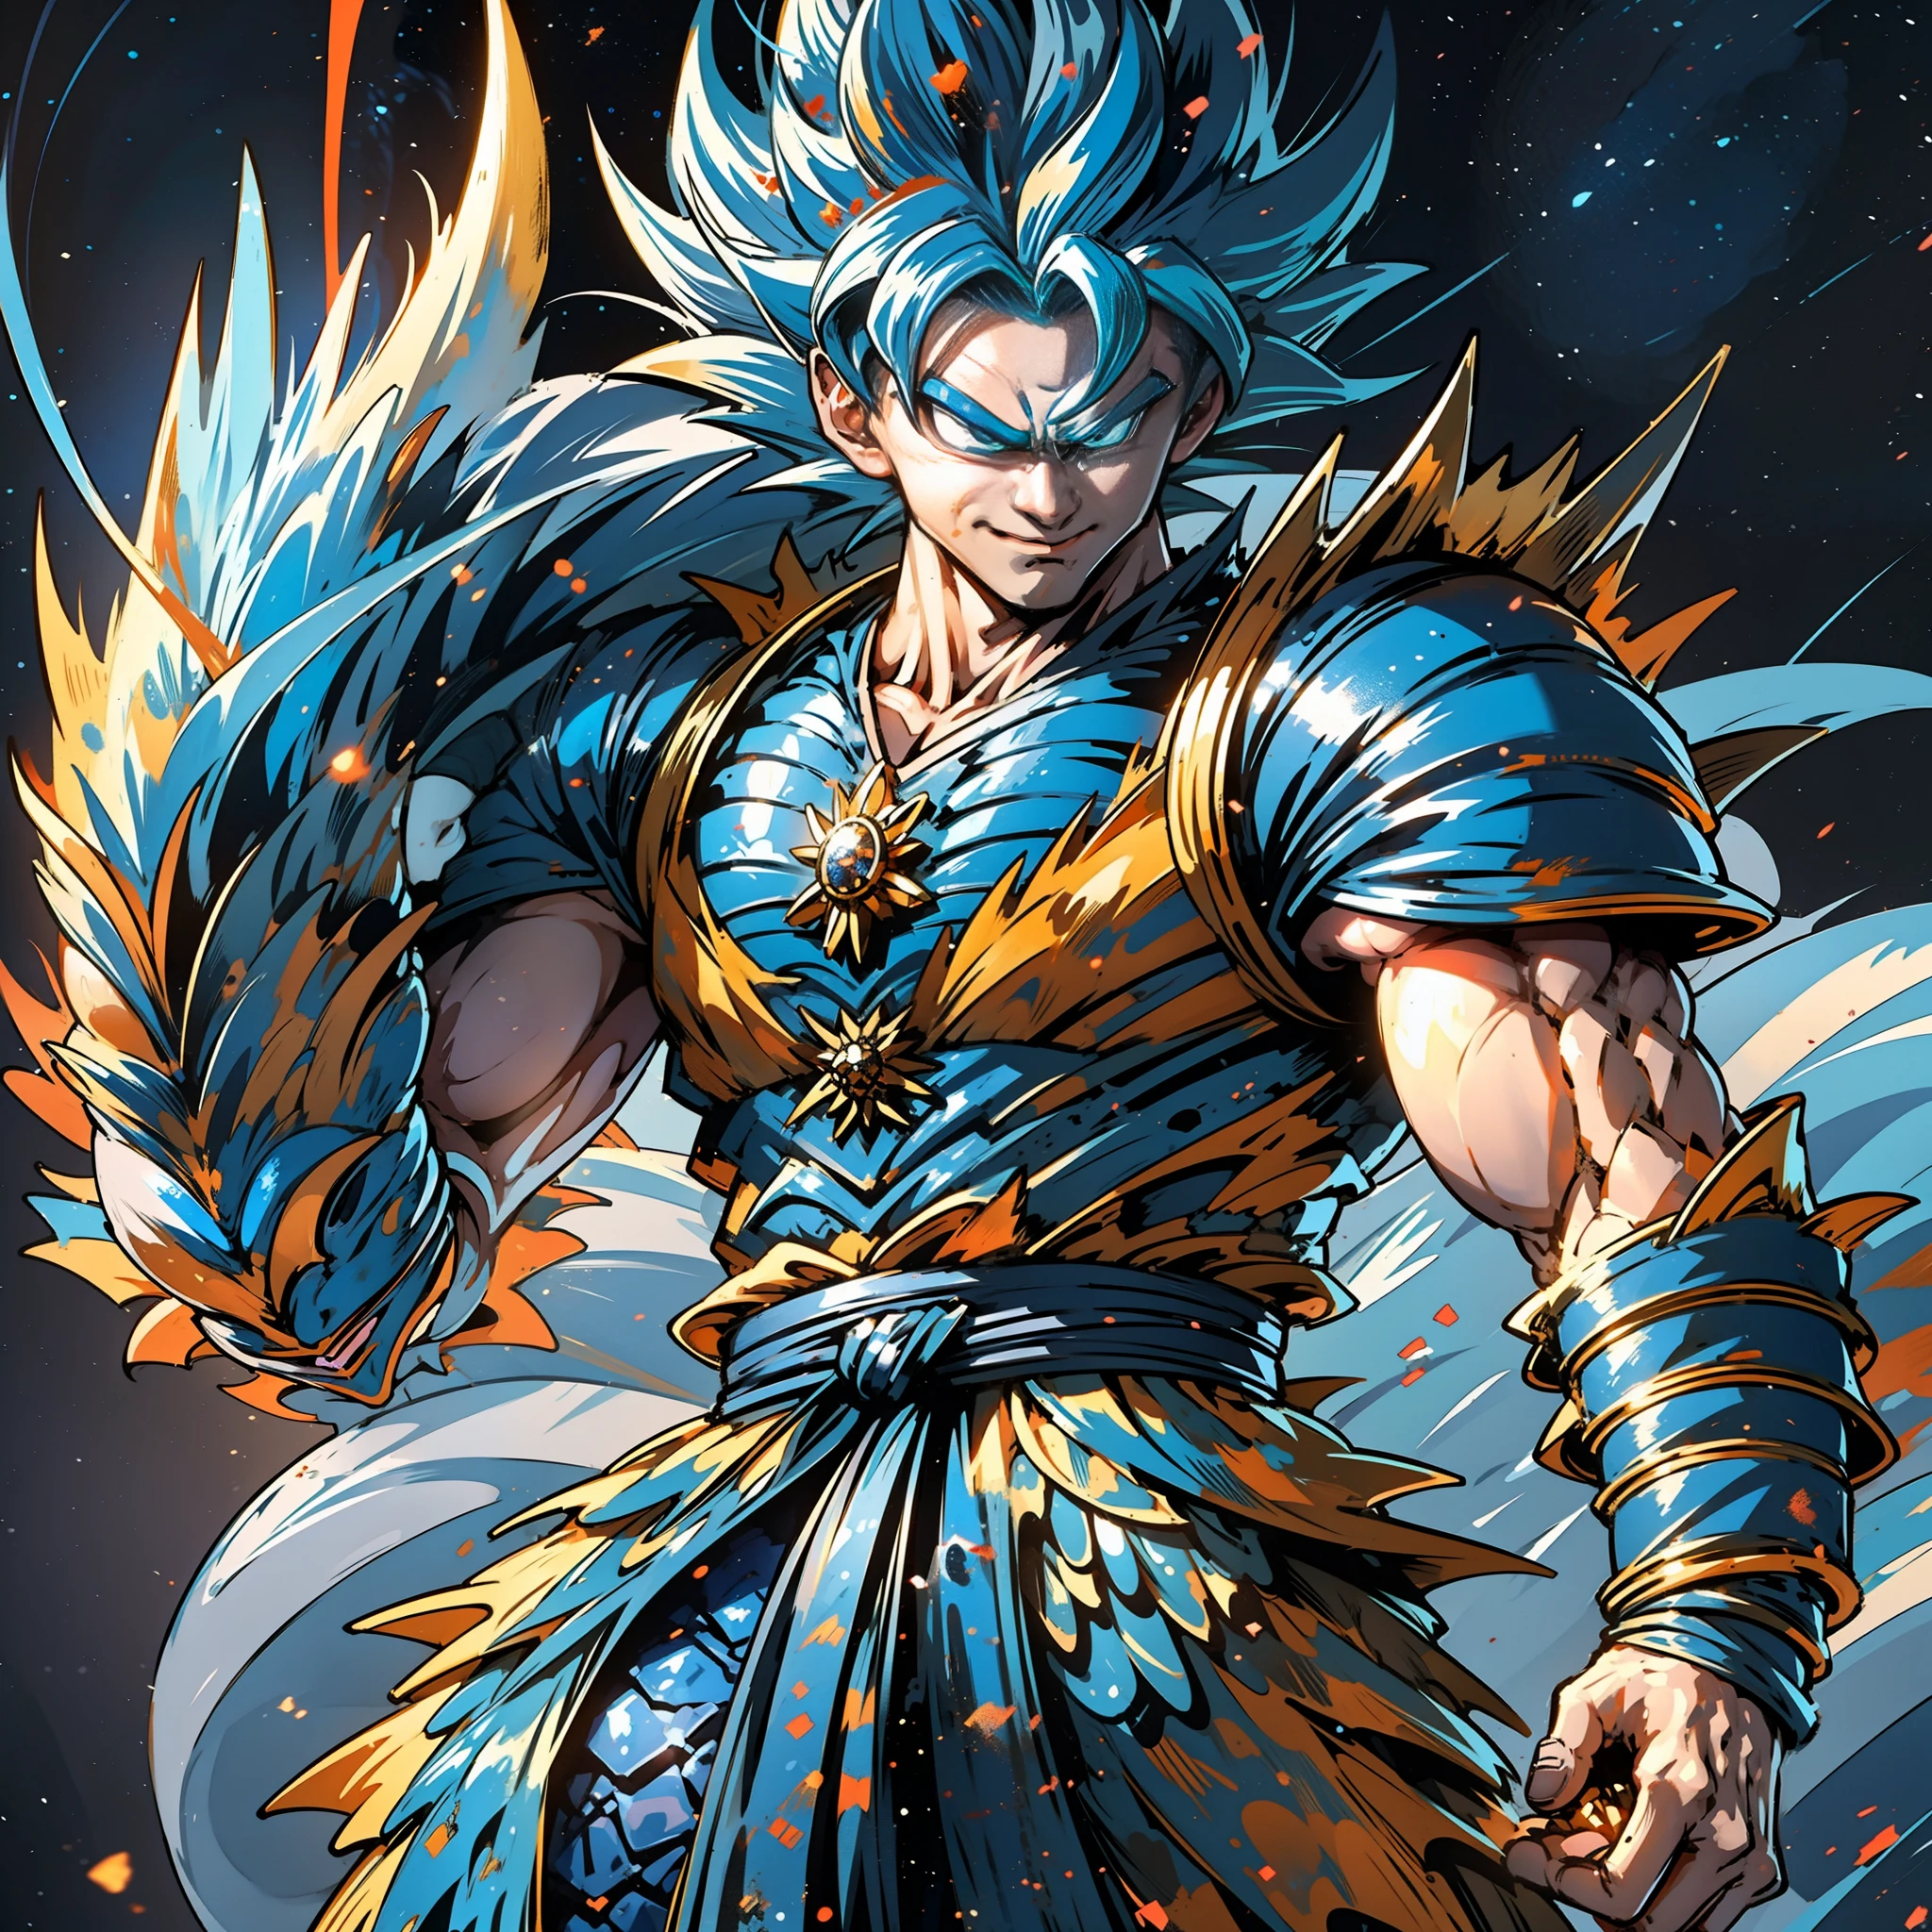 En Dragon Ball, Son Goku se pone una armadura hecha de escamas de dragón y estalla con luz de partículas azules